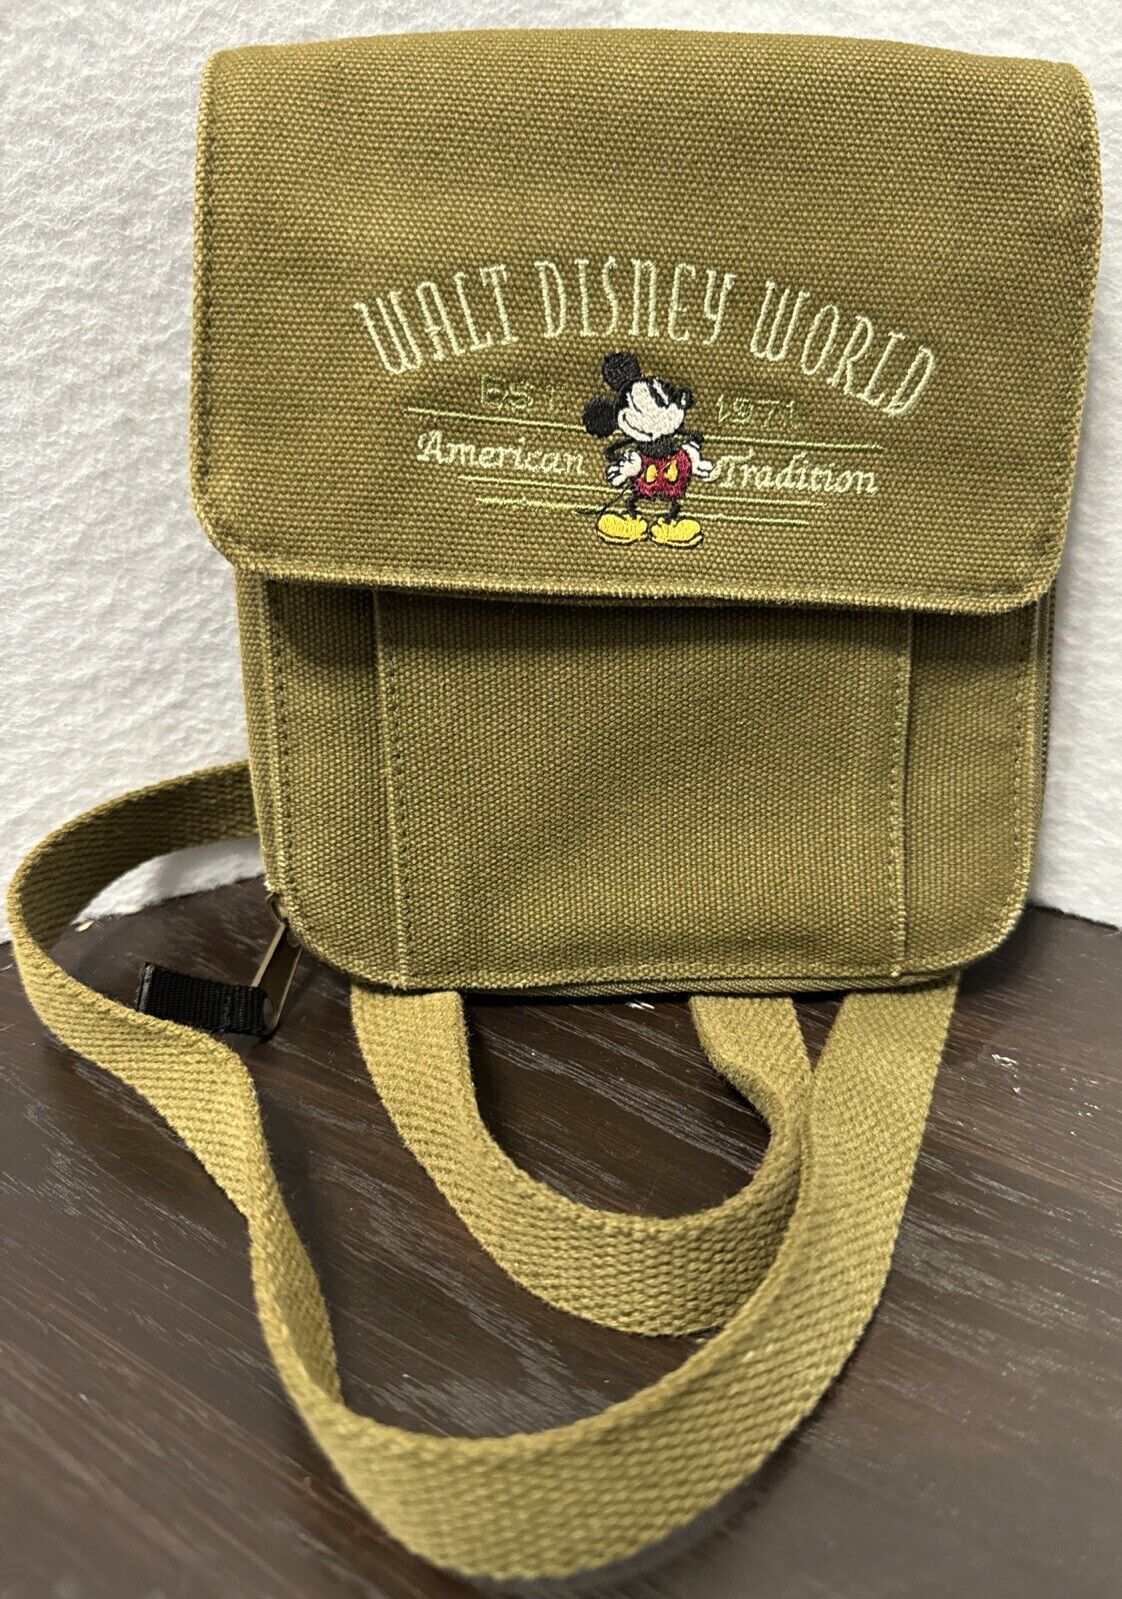 Walt Disney World Est 1971 American Tradition Id Holder,Wallet ,Shoulder Tote. 